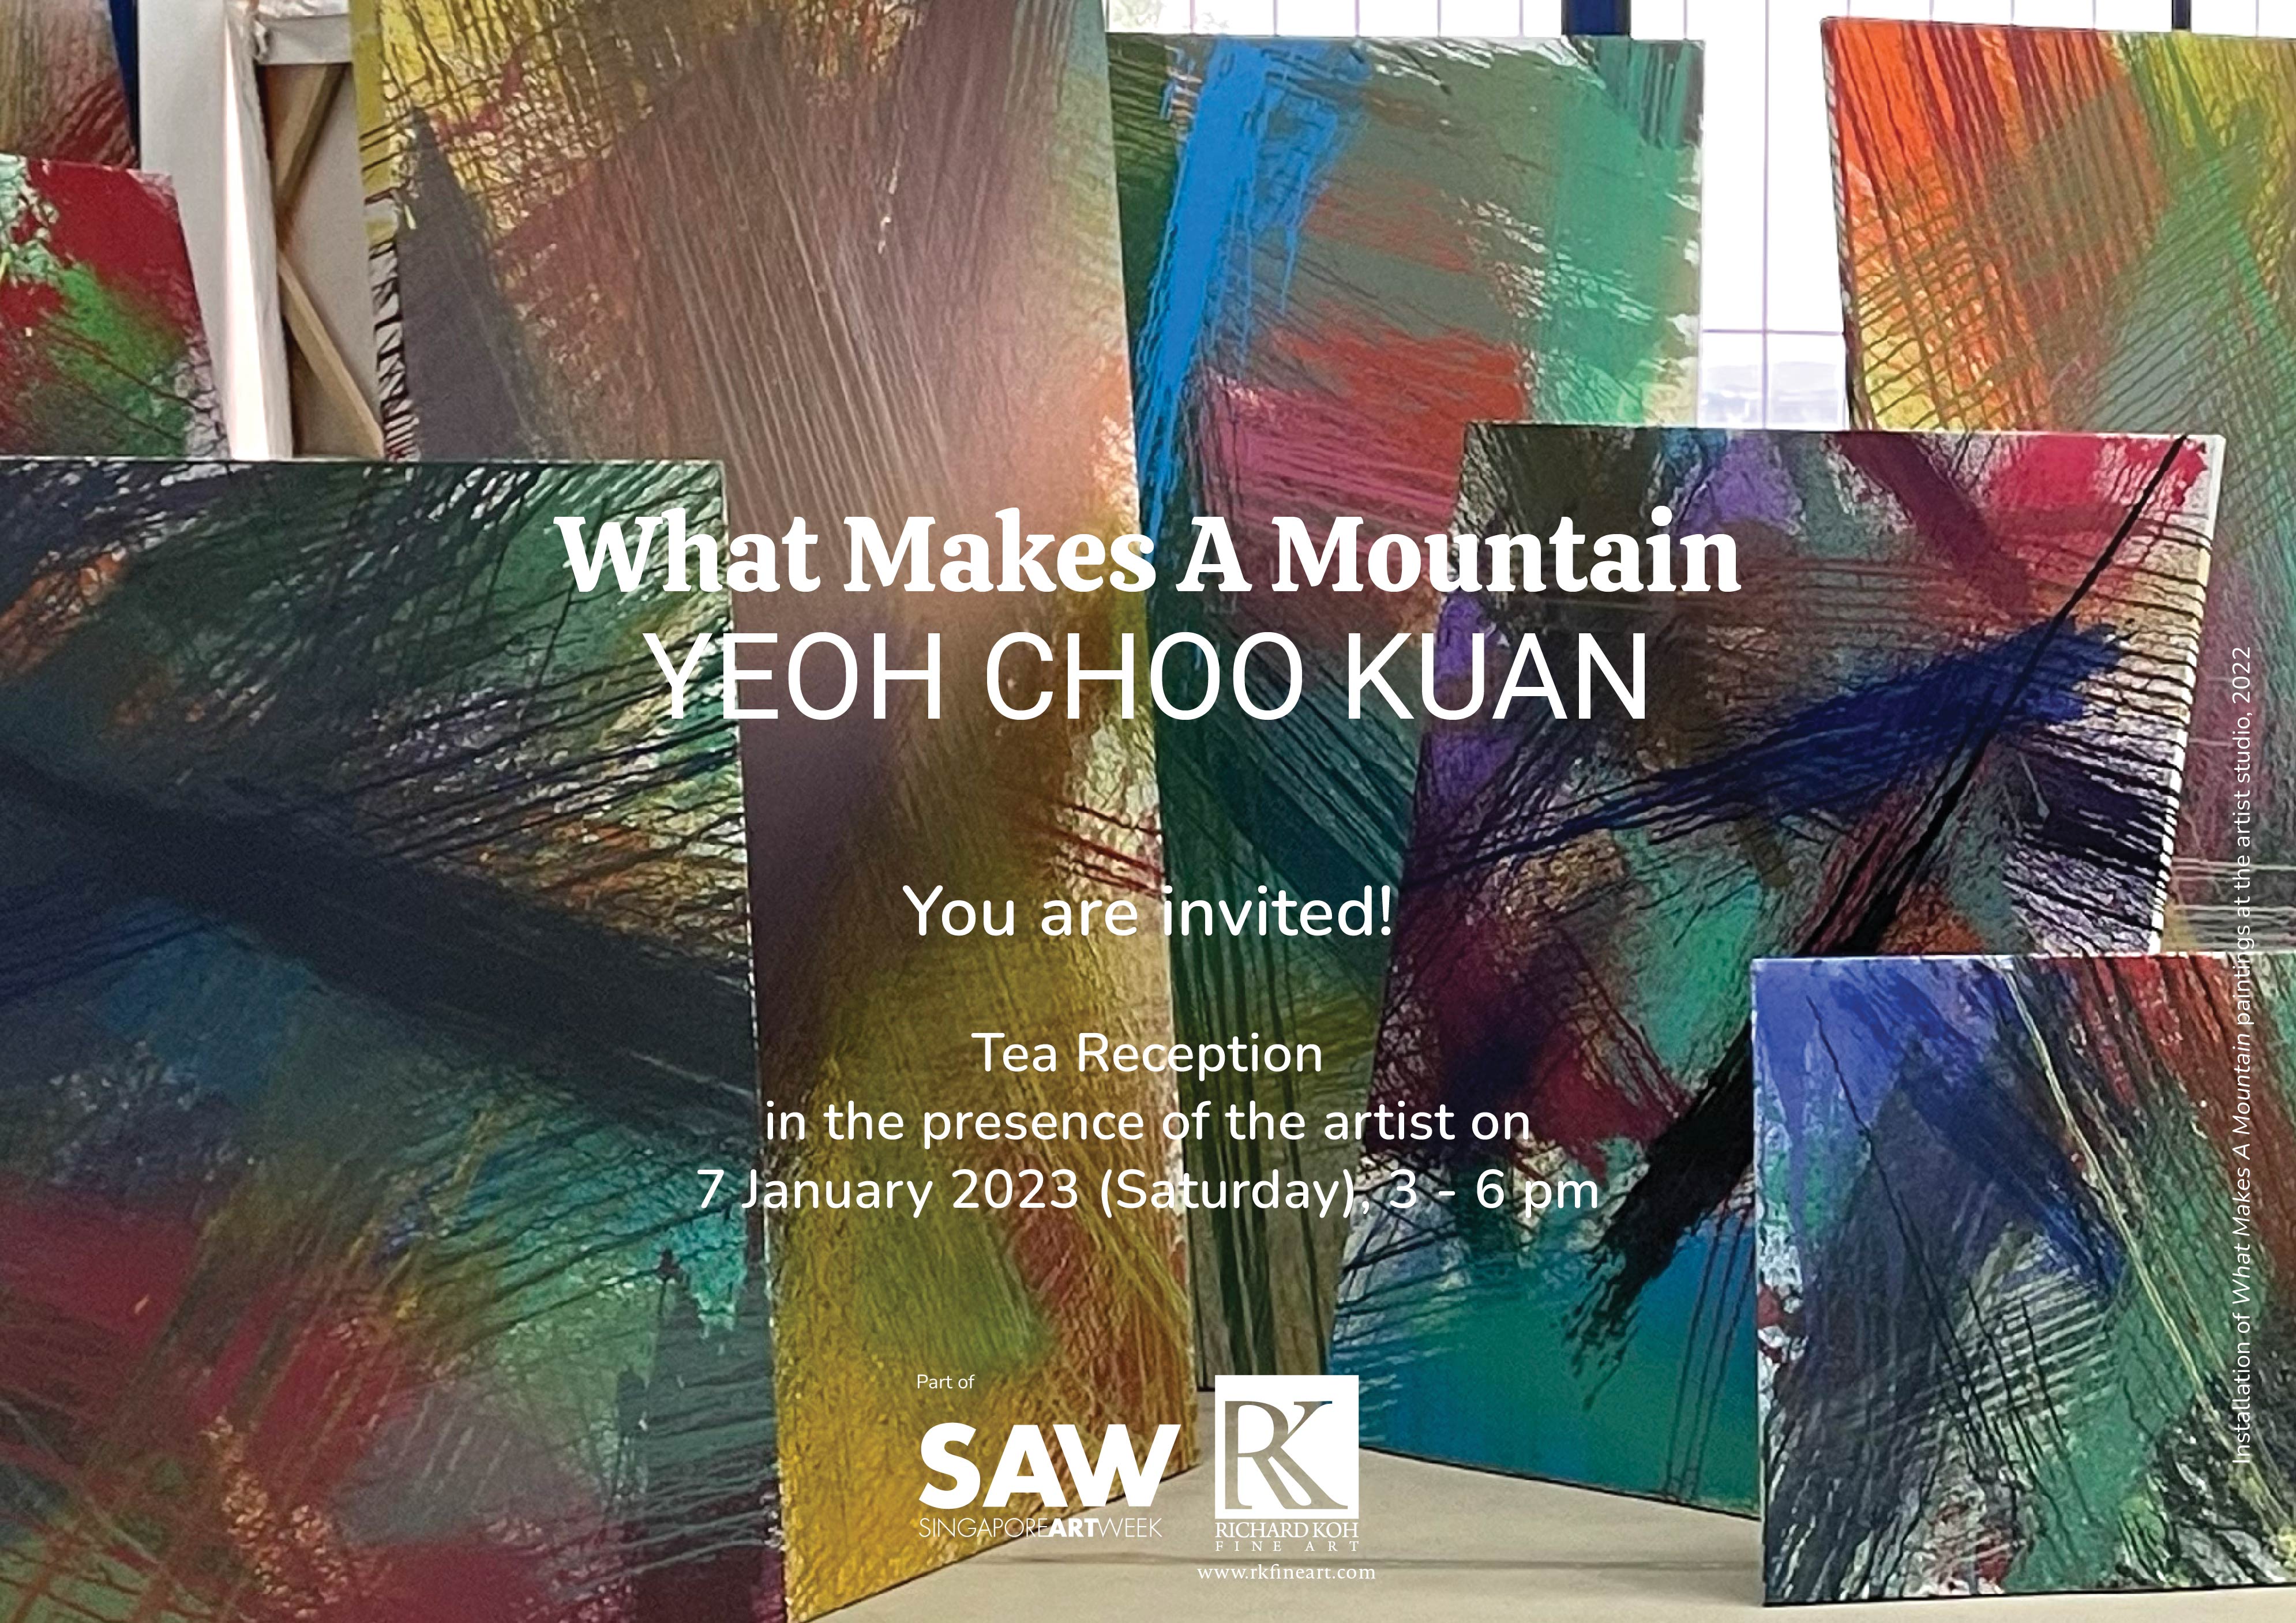   Yeoh Choo Kuan – What Makes A Mountain